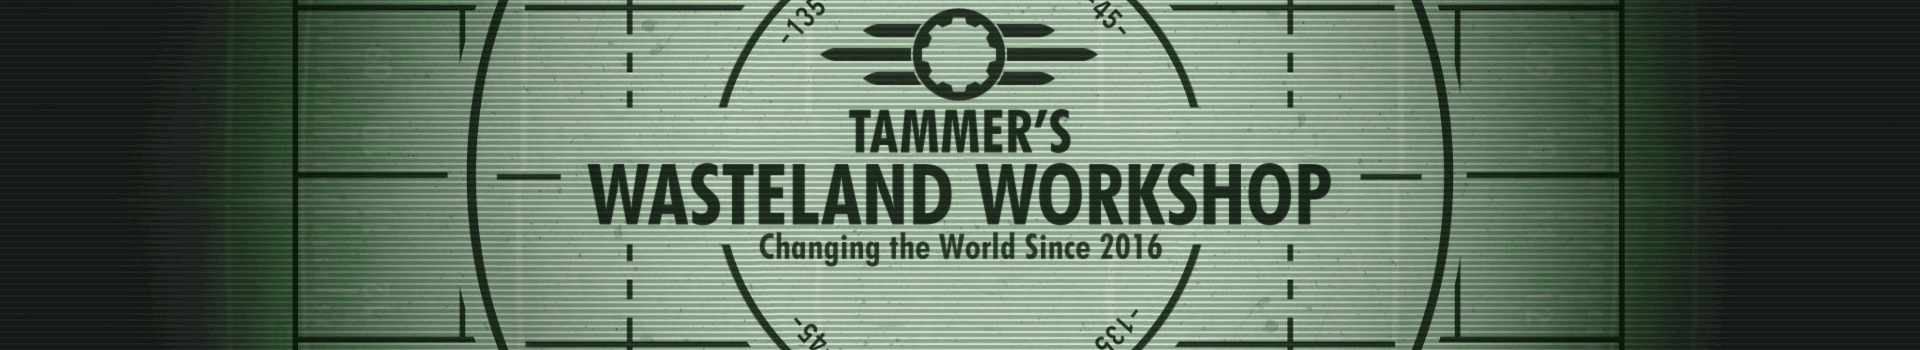 Tammer's Wasteland Workshop 